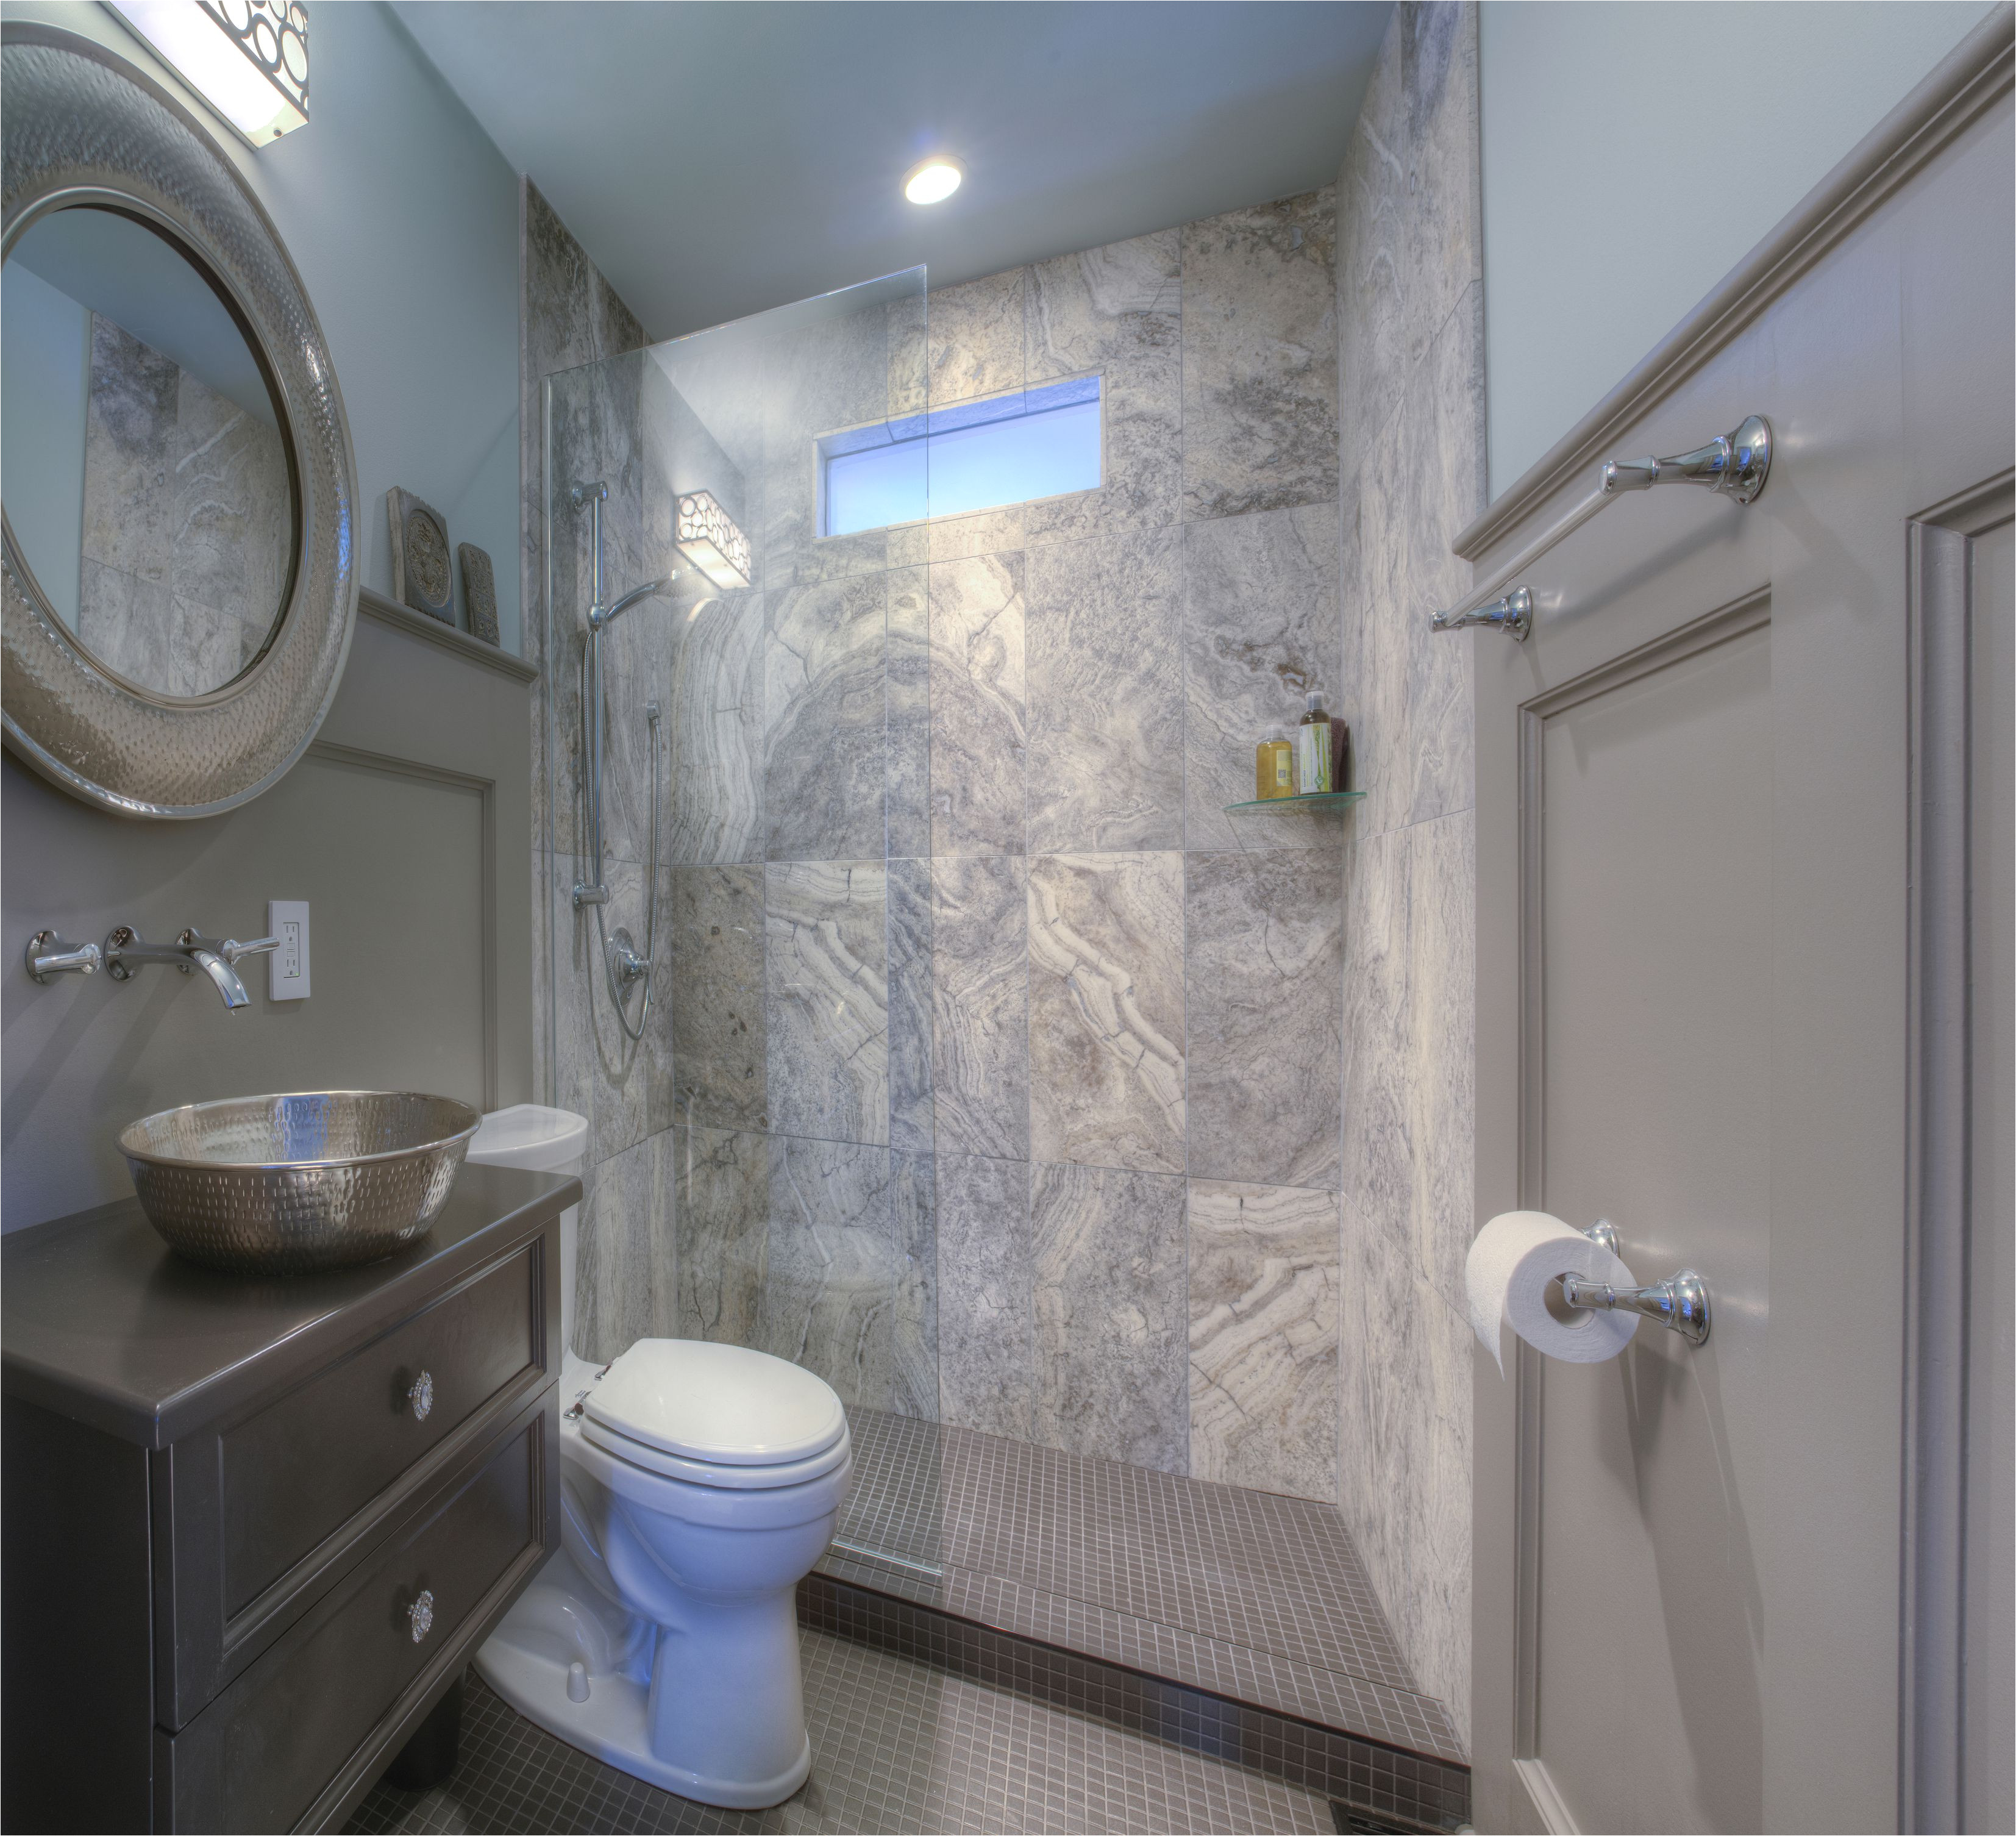 Bathroom Floor Tiles Design Ideas for Small Bathrooms 25 Killer Small Bathroom Design Tips